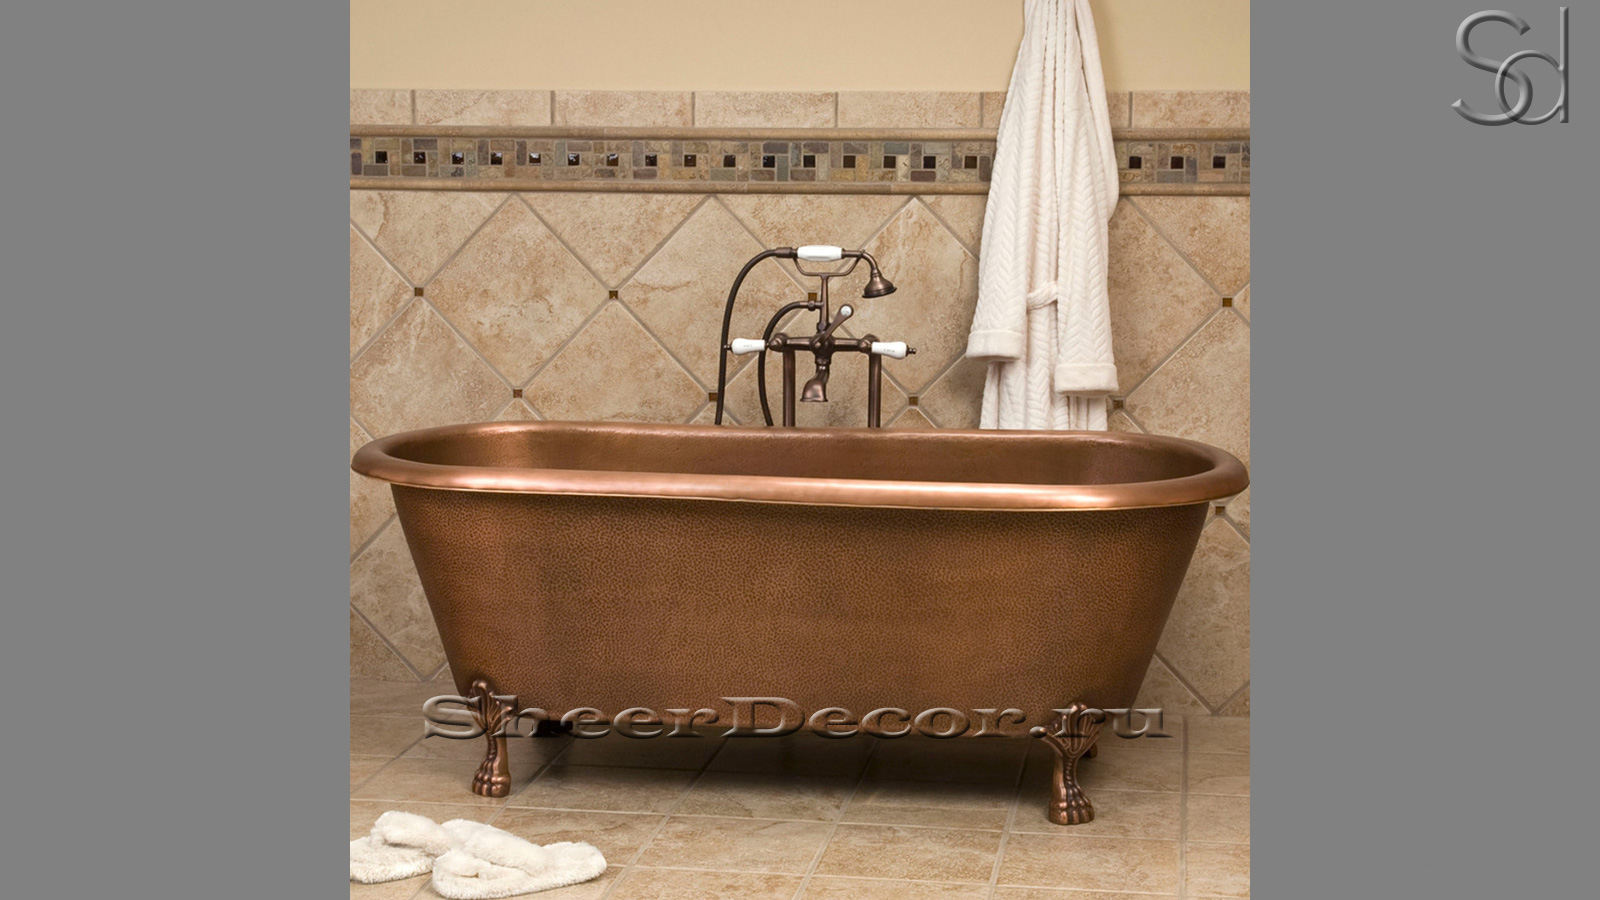 Дизайнерская ванна Sandra M27 из бронзы Bronze0683008527 производство ИНДОНЕЗИЯ_1